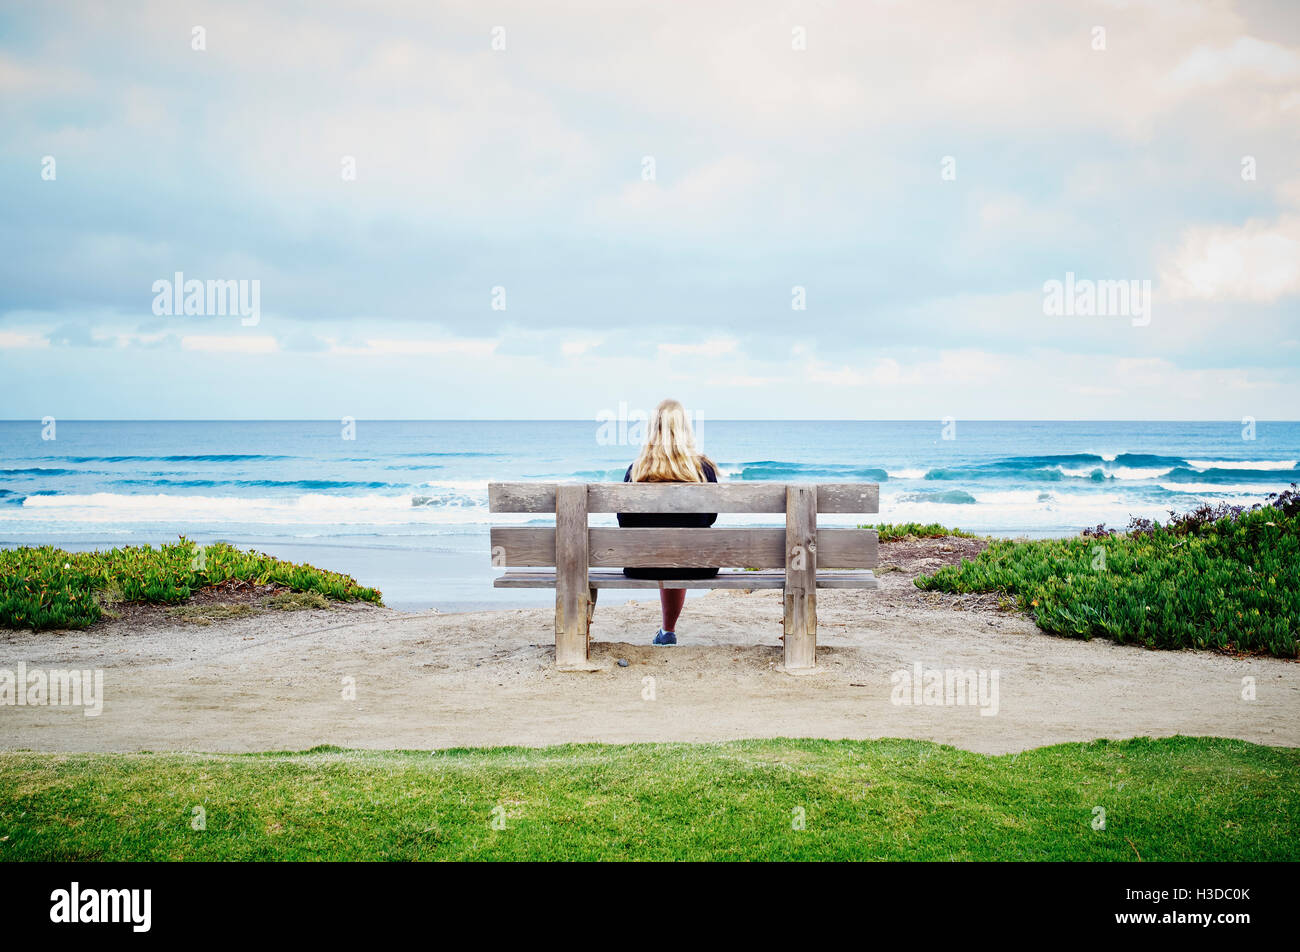 Rückansicht einer blonden Frau an einem Strand am Meer sitzen. Stockfoto